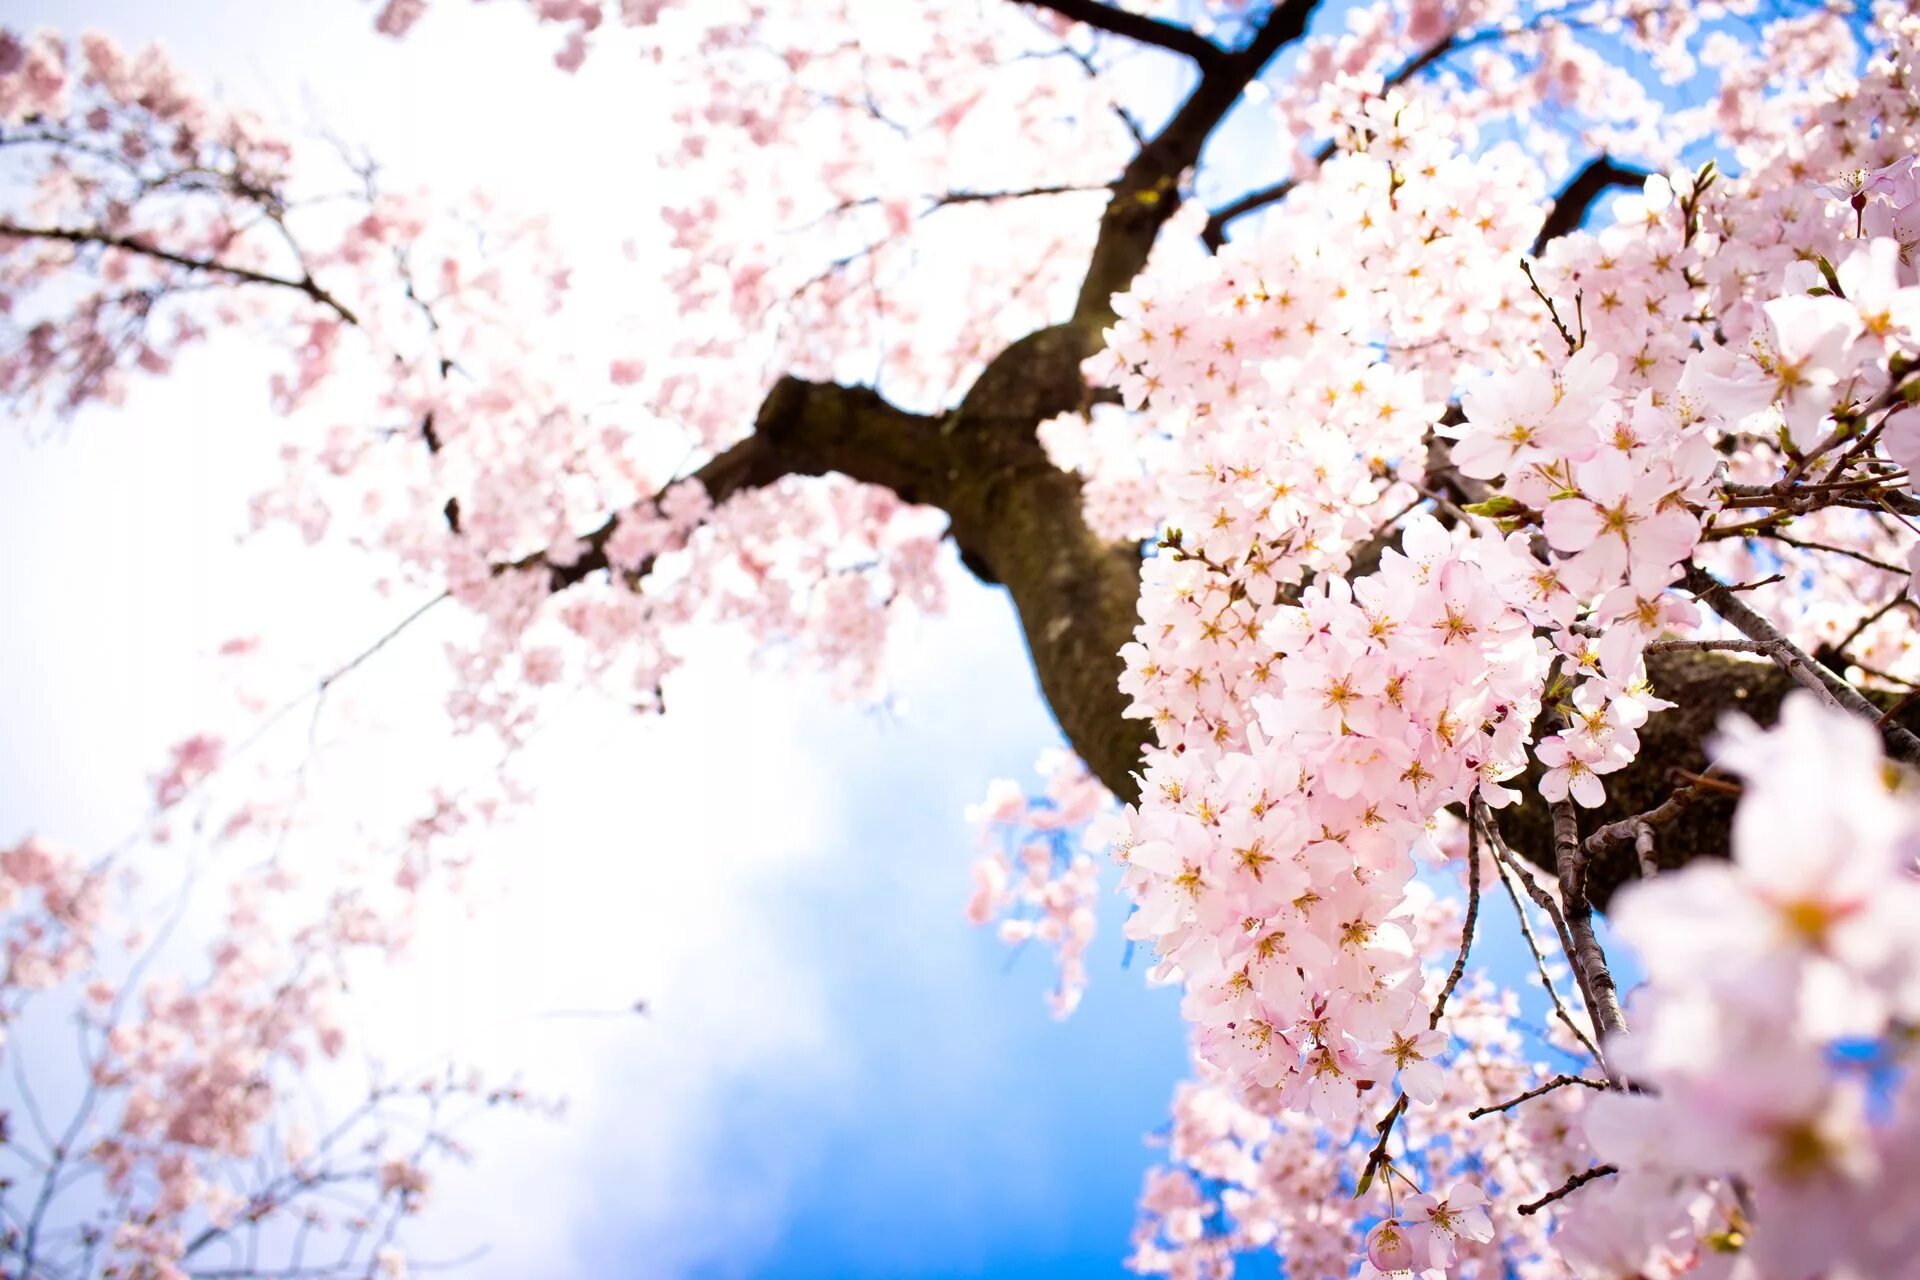 Фото весны красивые на заставку на телефон. Черри блоссом. Черри блоссом цветок. Черри блоссом дерево. Сакура черри блоссом дерево.